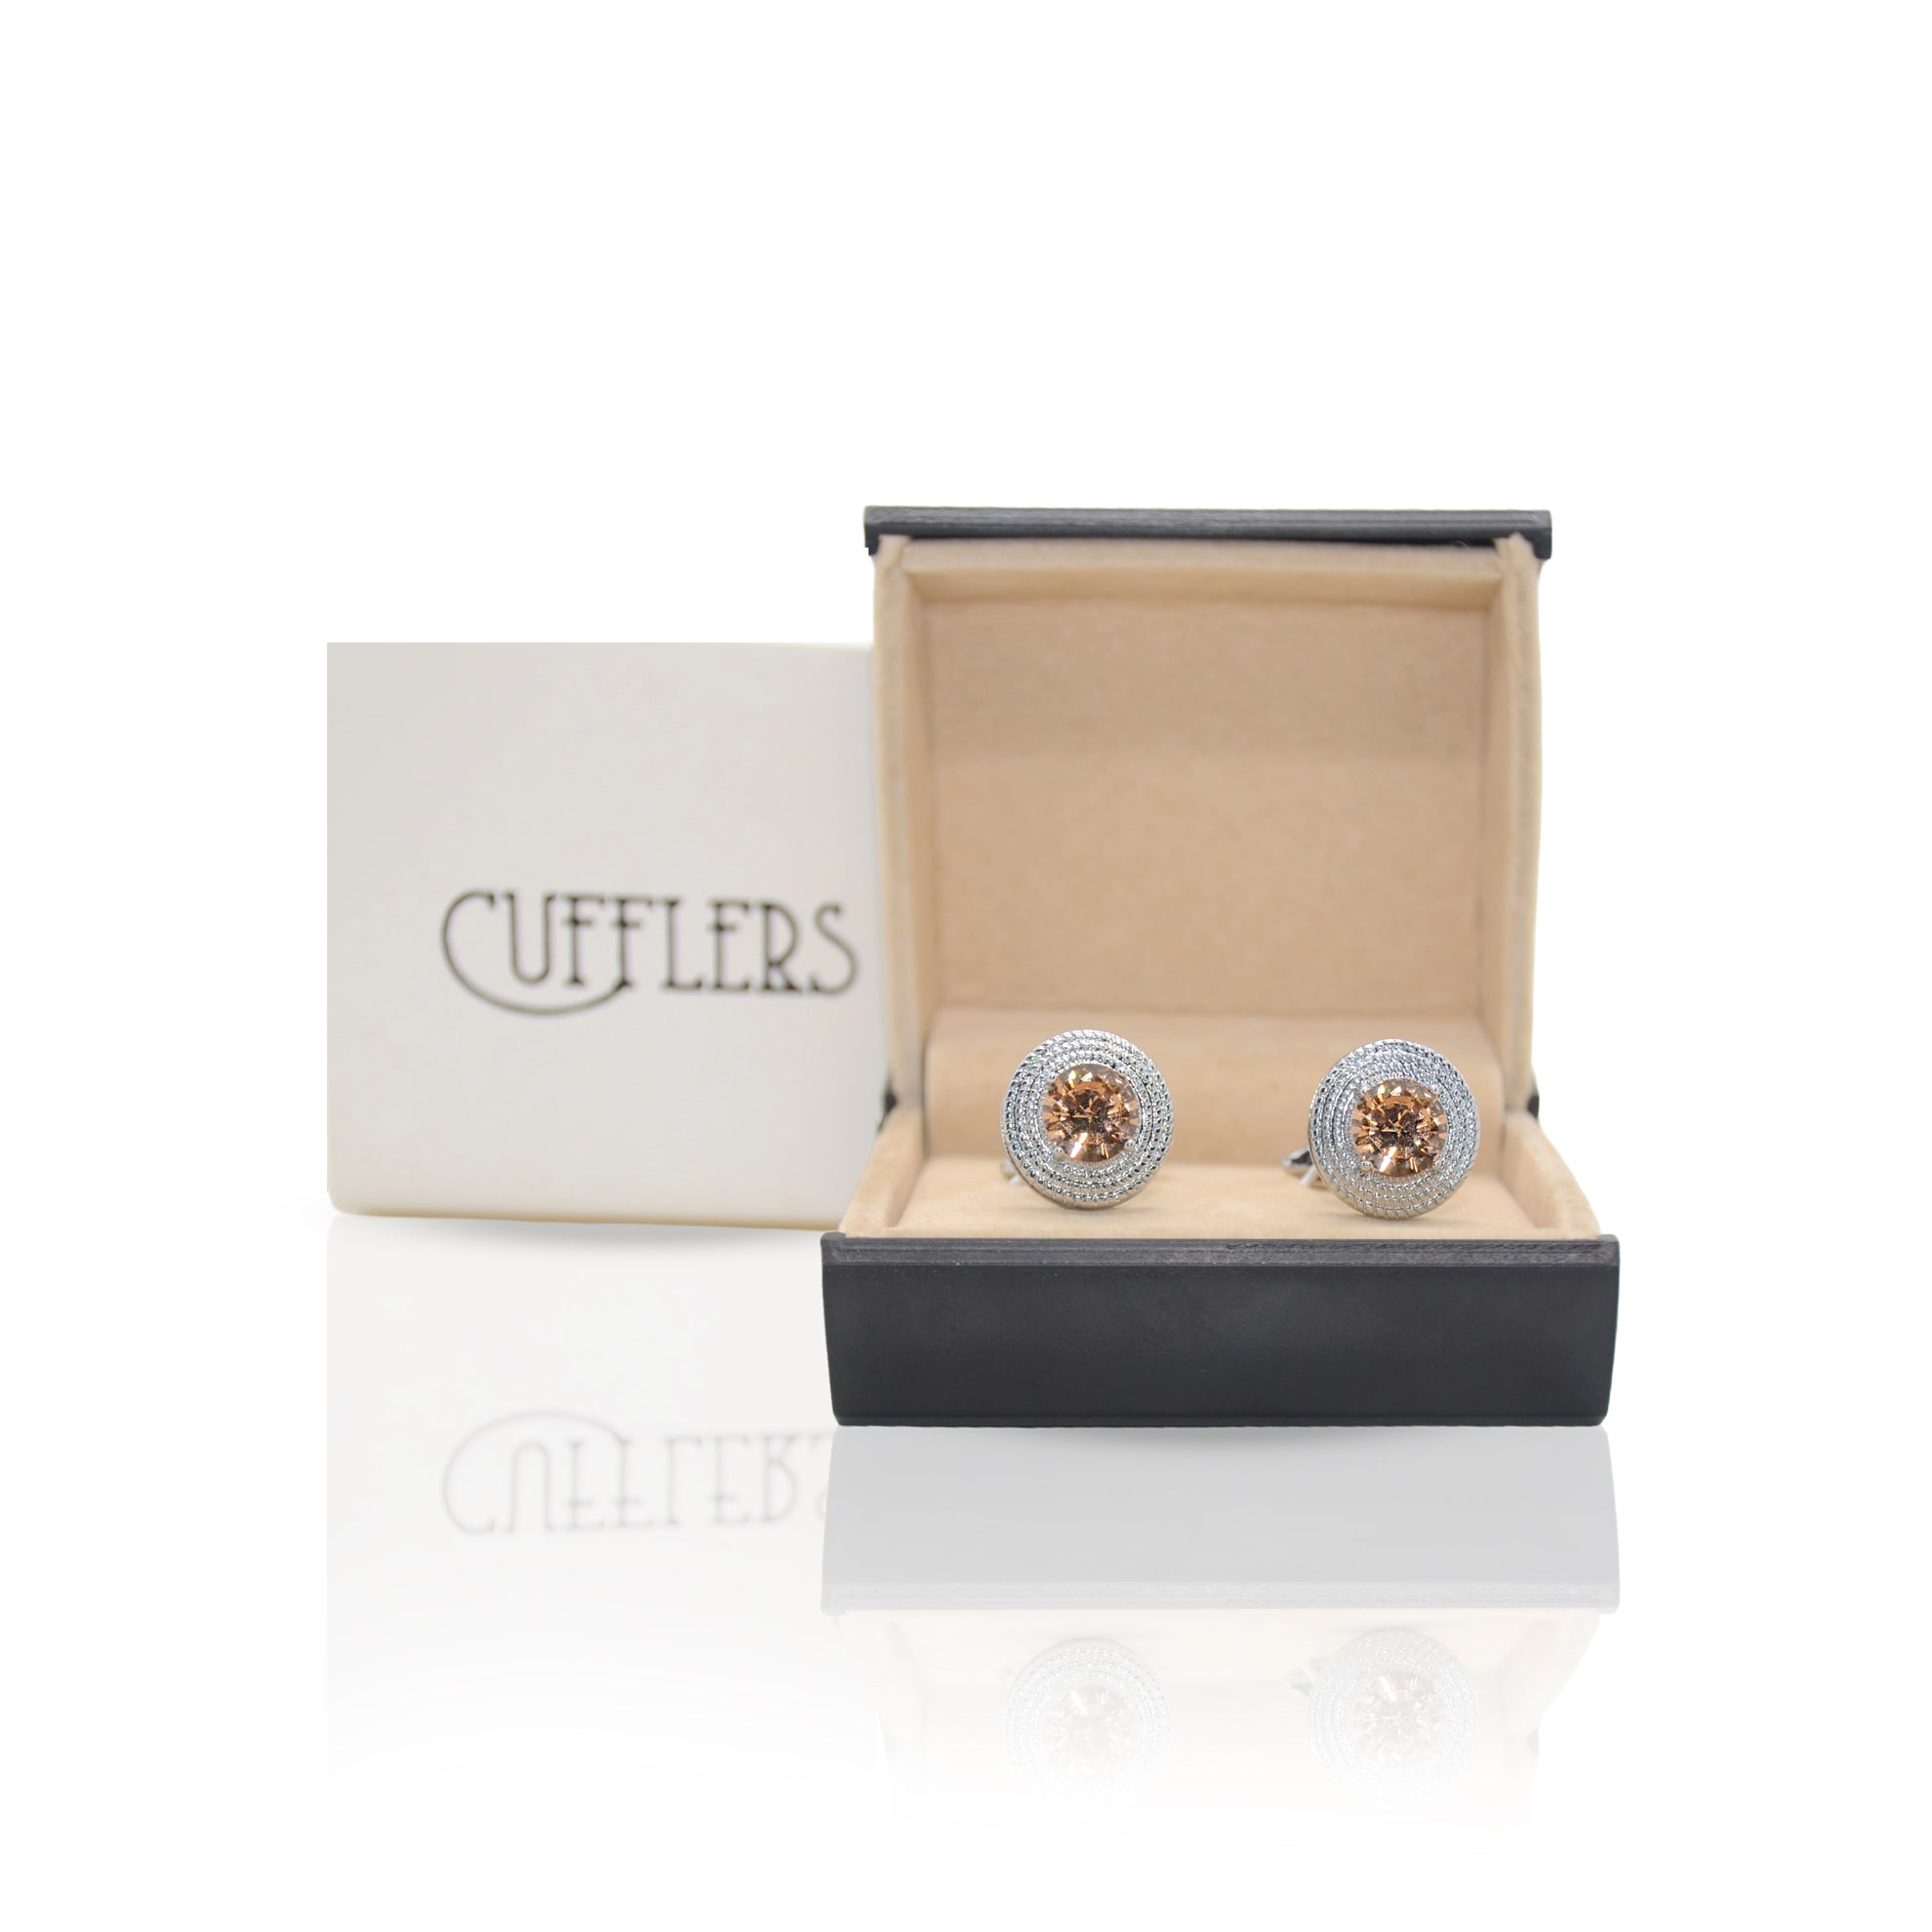 Cufflers Modern Silver Circle Cufflinks - CU-3008